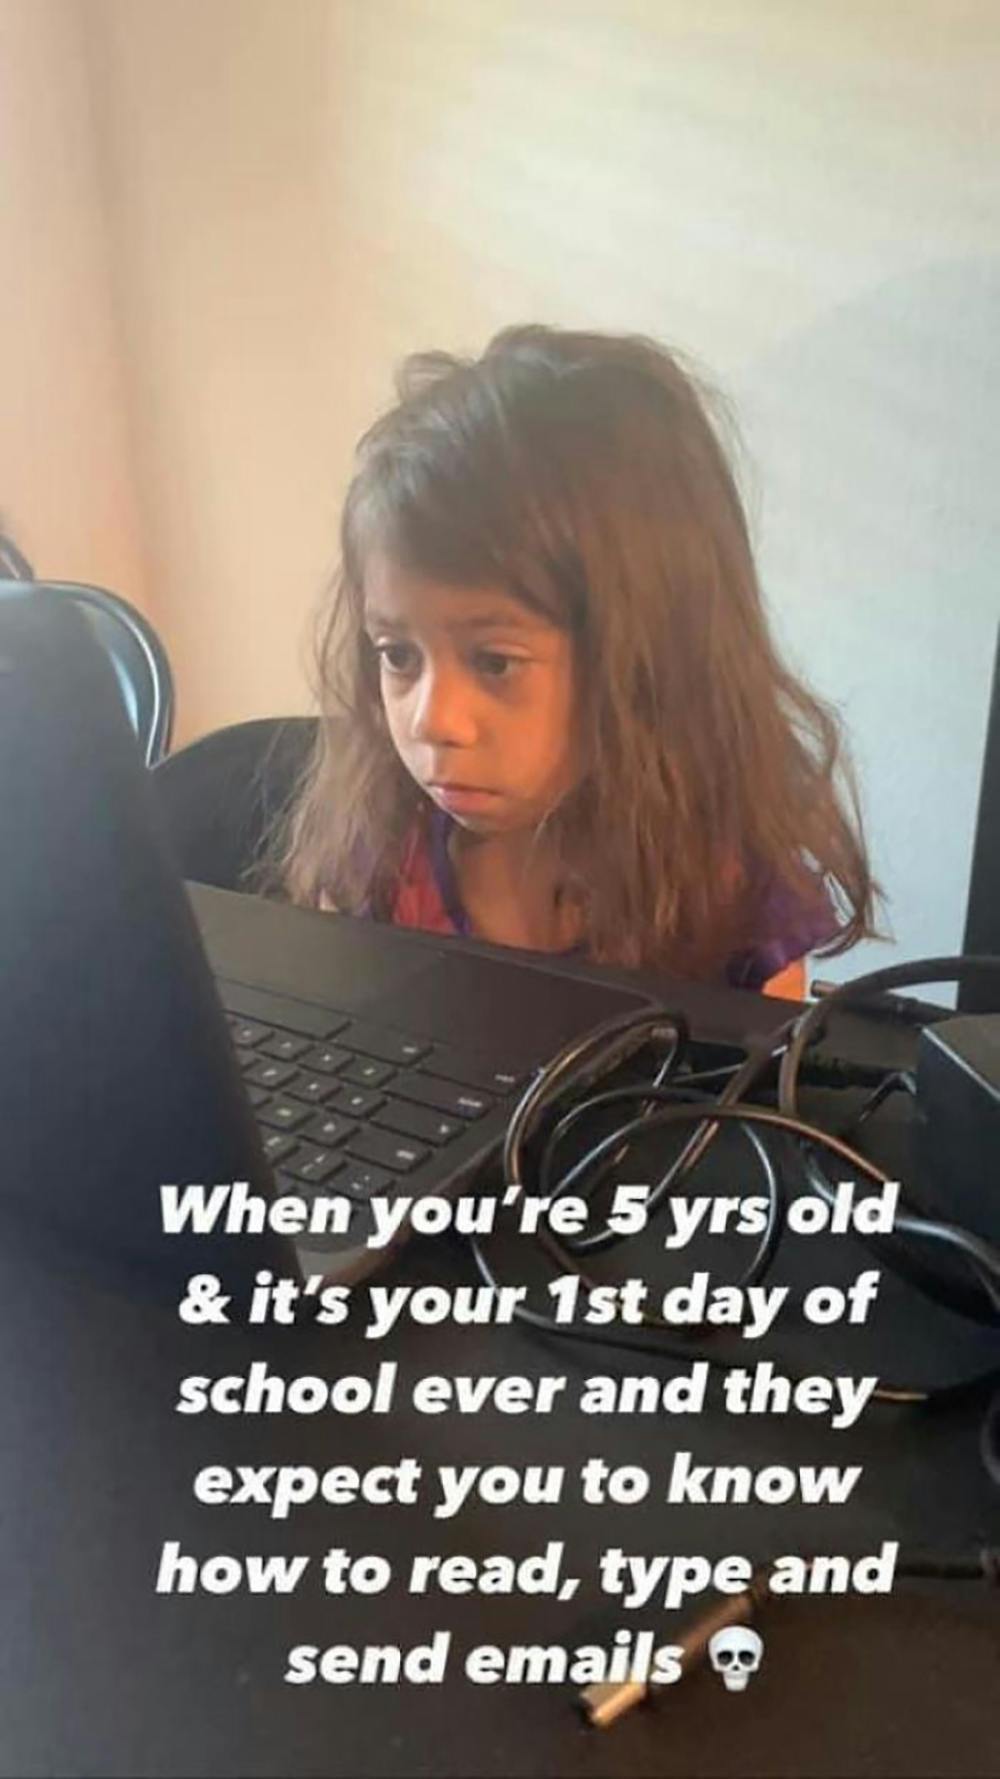 enfant qui s'ennuie devant un cours virtuel sur ordinateur